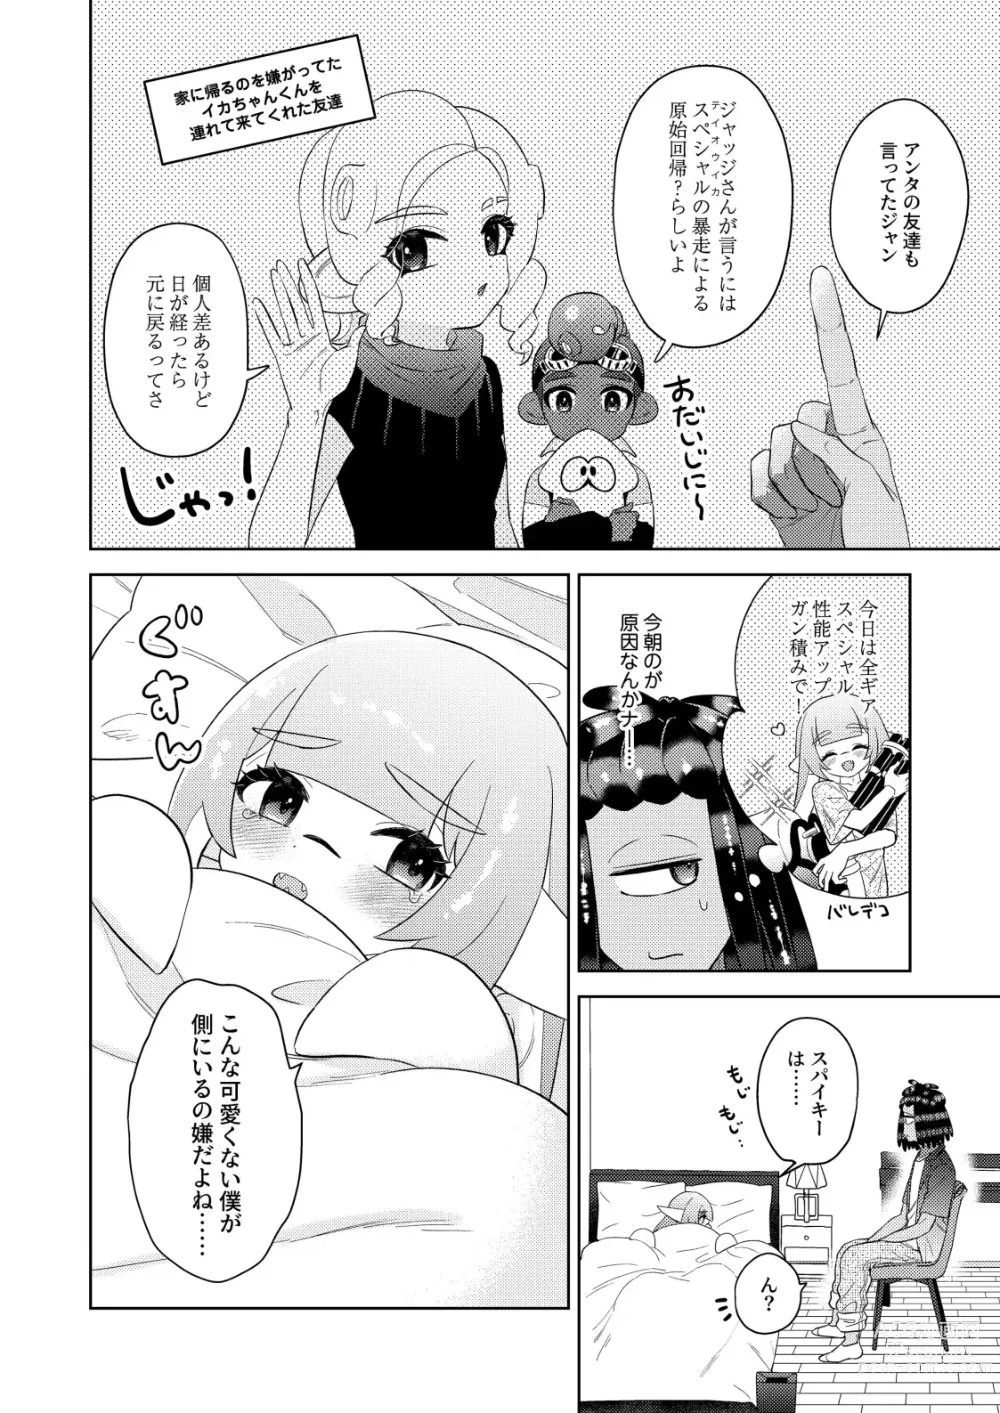 Page 5 of doujinshi Kawaihito